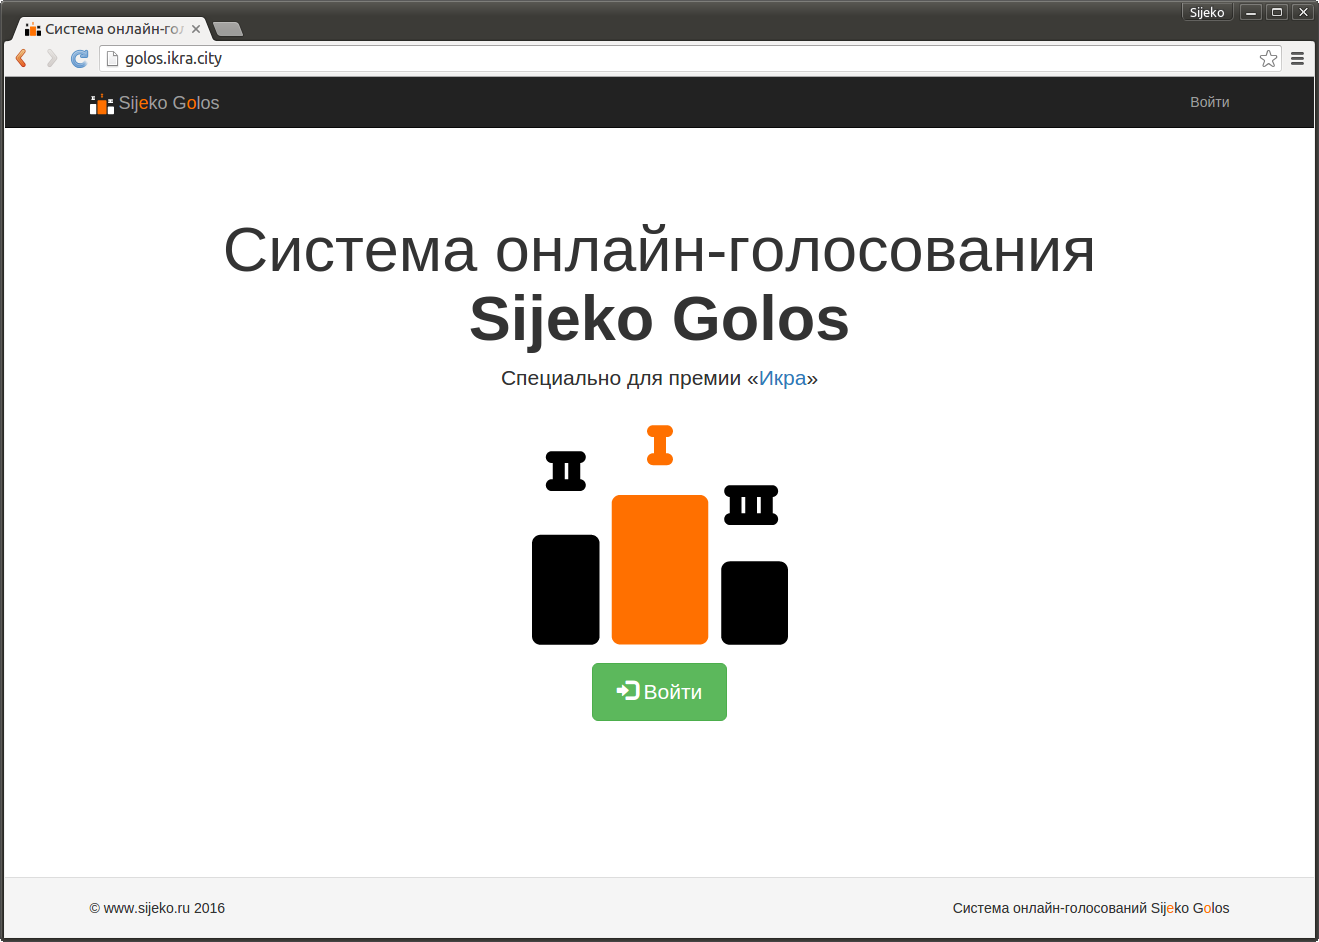 Система онлайн-голосования Sijeko Golos в разработке